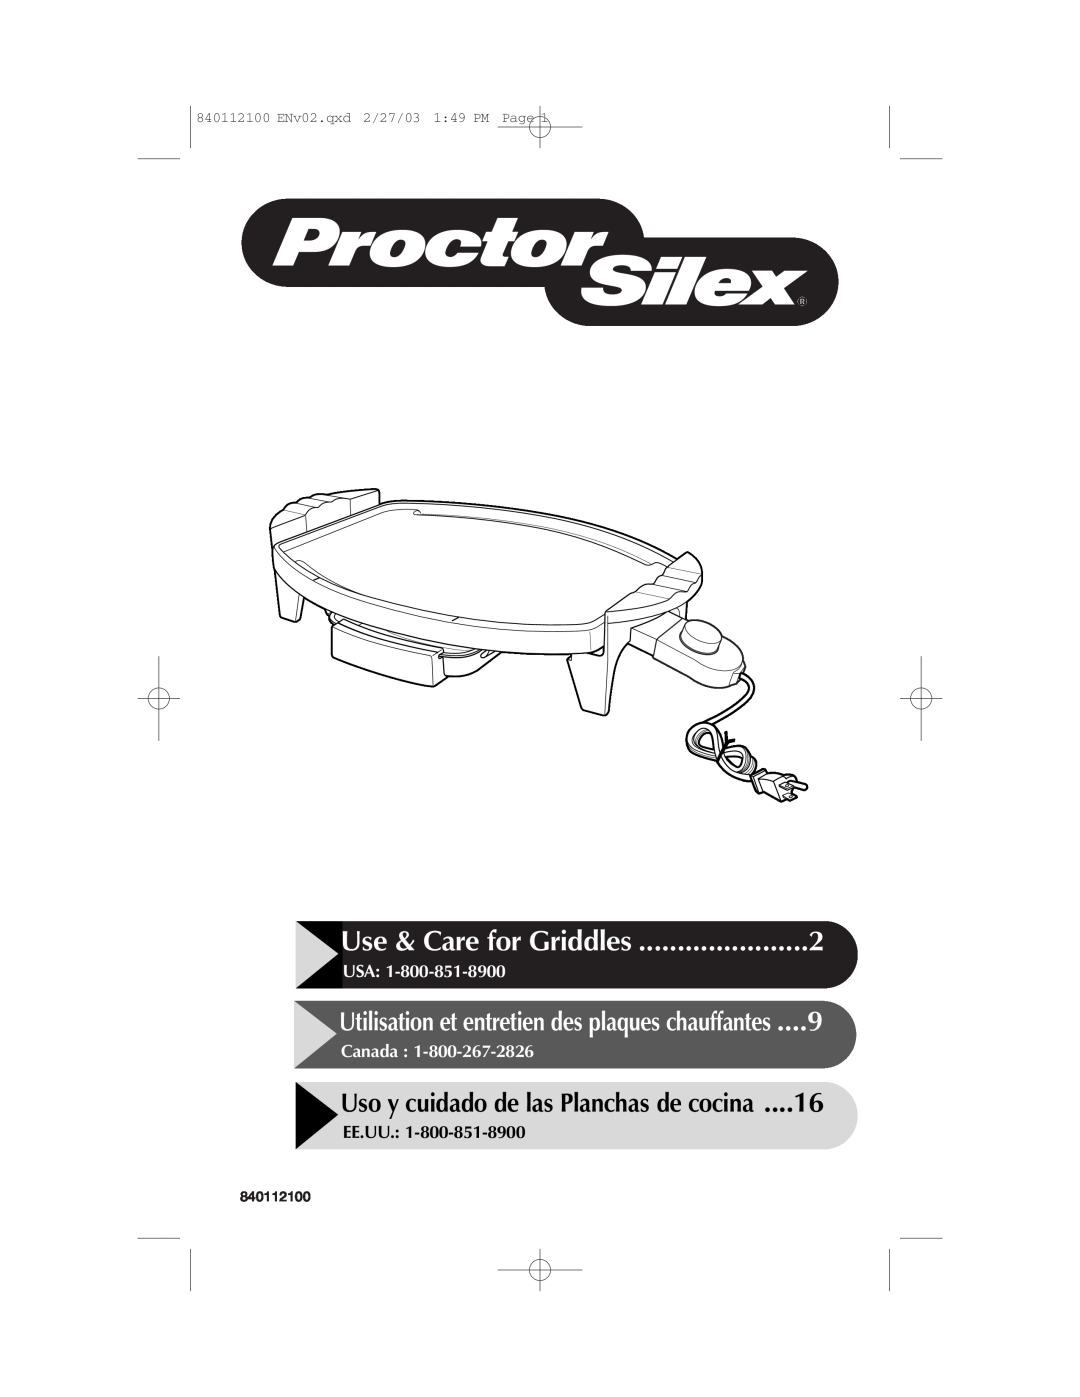 Proctor-Silex 840112100 manual Use & Care for Griddles, Uso y cuidado de las Planchas de cocina, Usa, Canada, Ee.Uu 